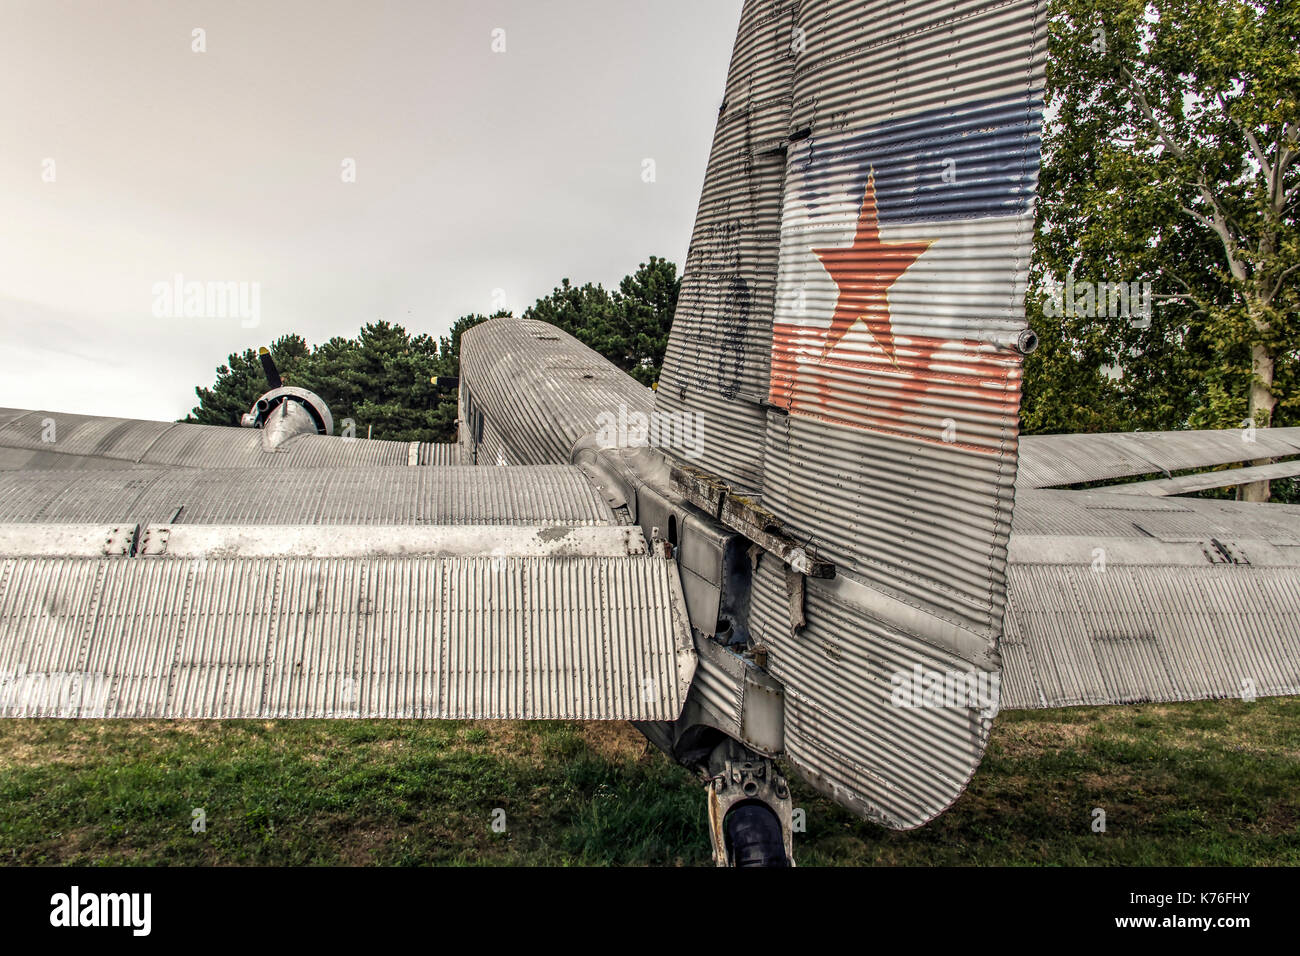 Serbie - un vieux Junkers Ju 52 appareils d'un drapeau yougoslave Banque D'Images